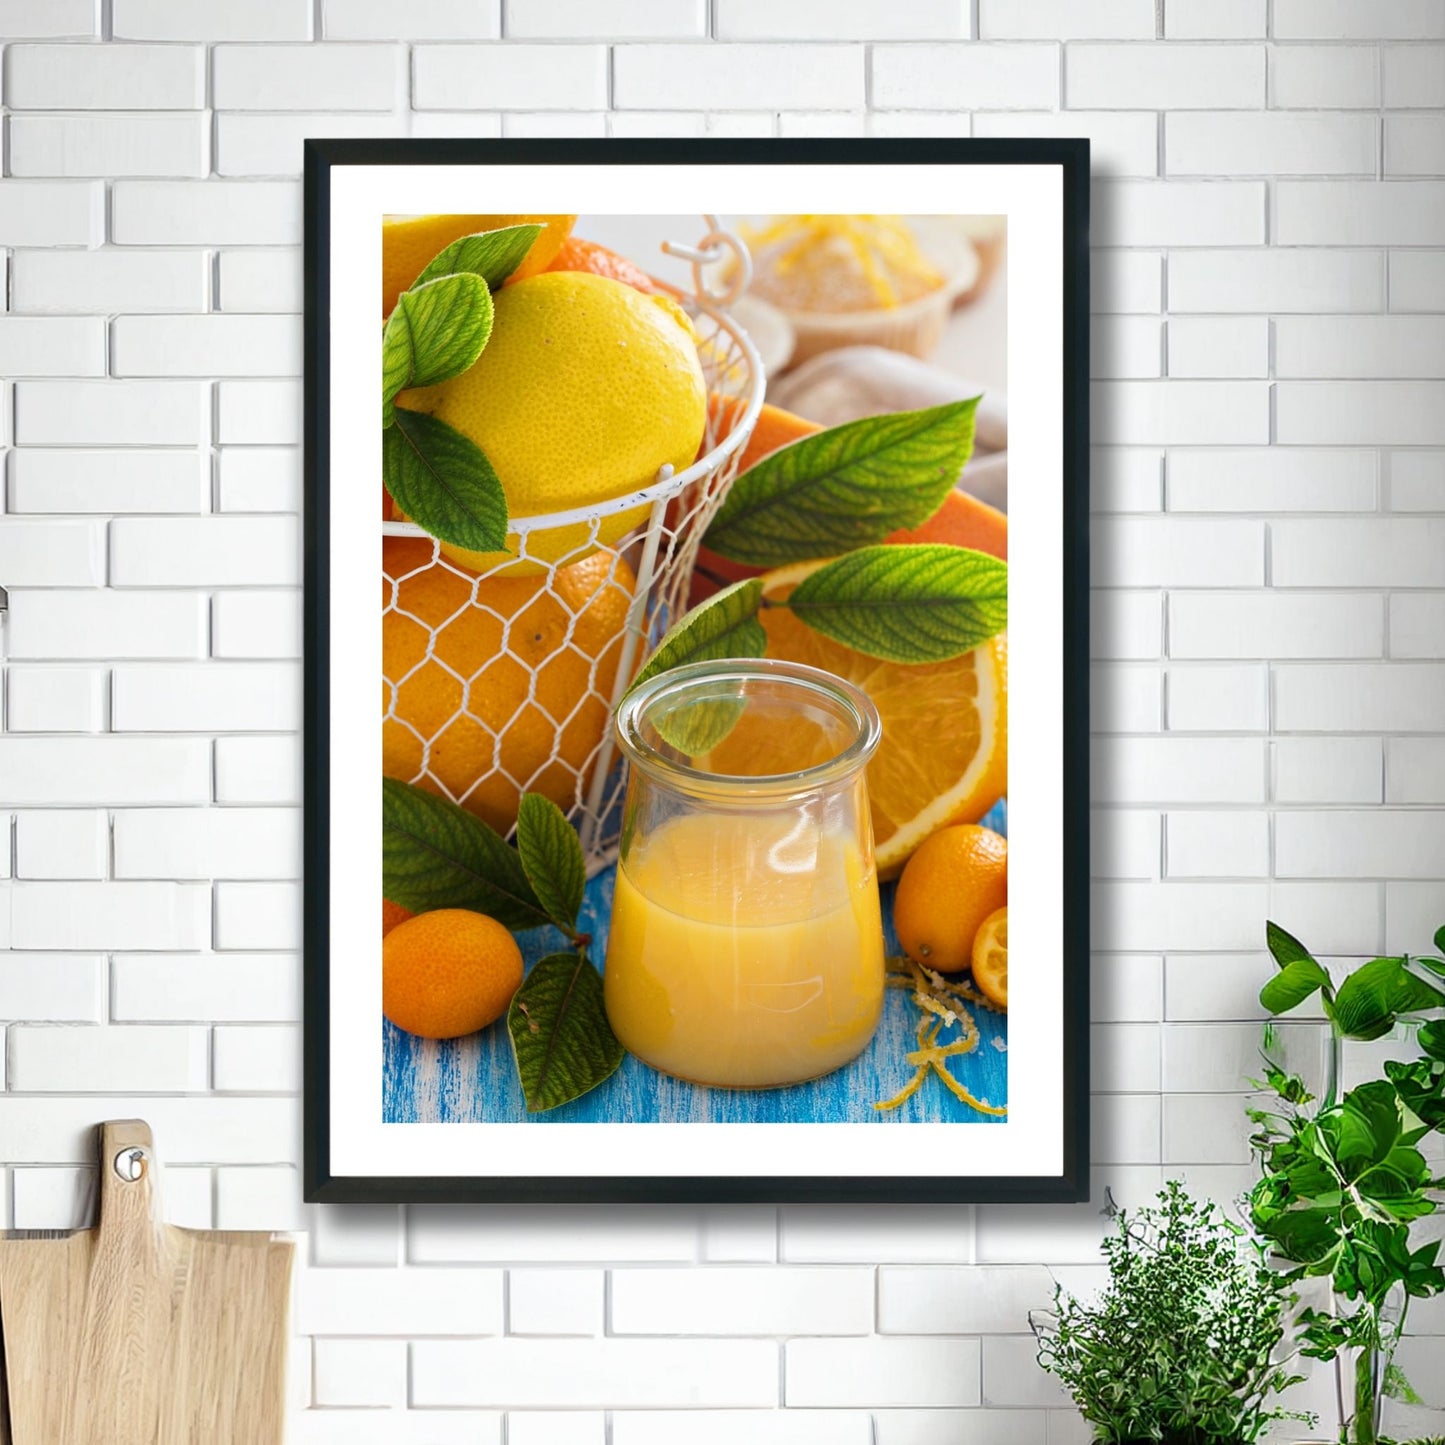 Fotoplakat av appelsiner og et glass med juice. Illustrasjonsvilde viser plakat i sort ramme på et kjøkken.